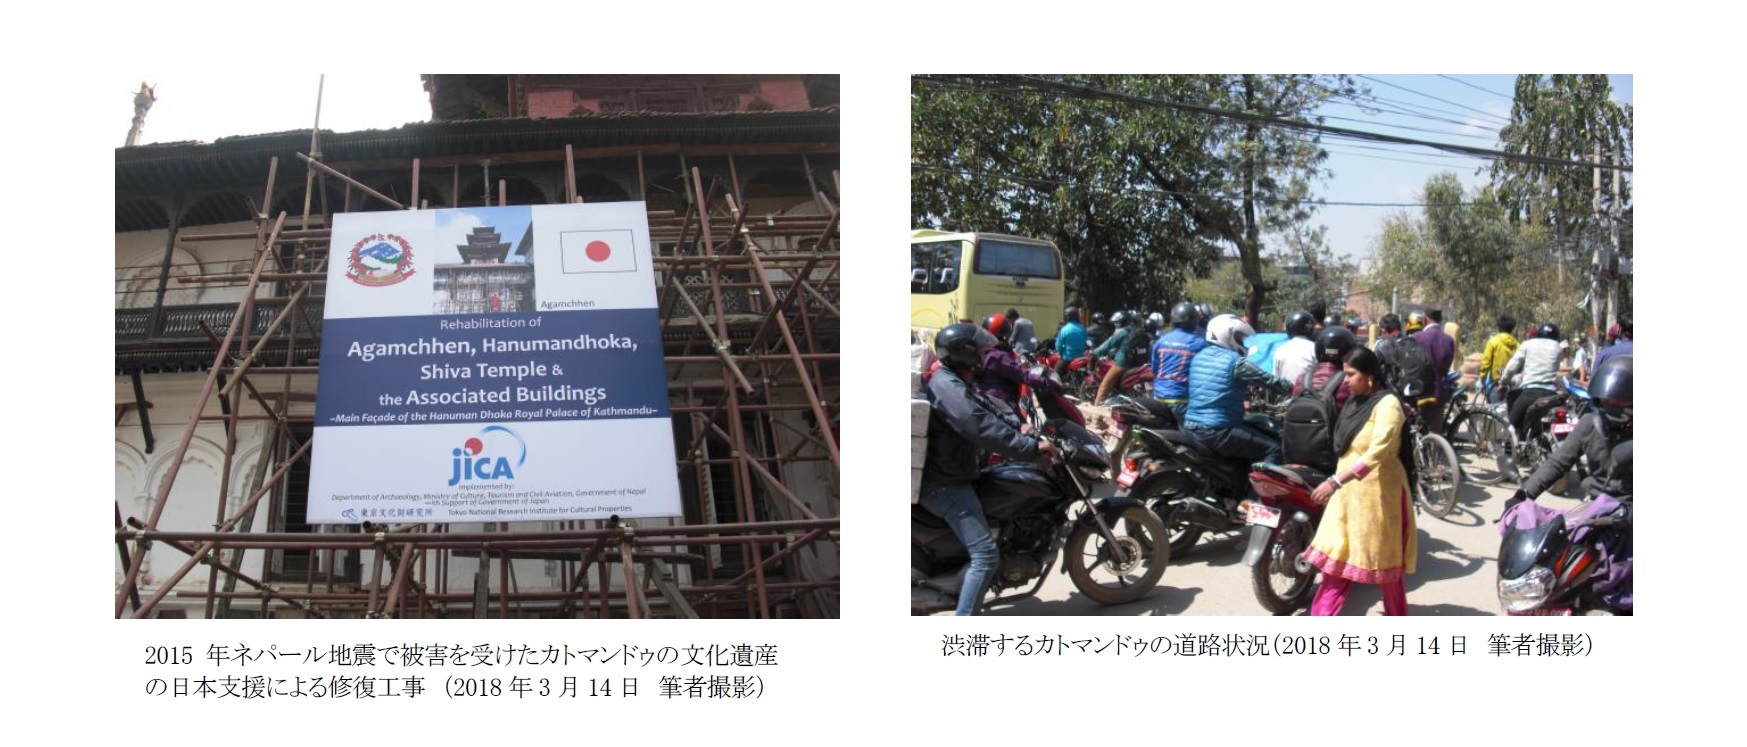 2015年ネパール地震で被害を受けたカトマンドゥの文化遺産の日本支援による修復工事　（2018年3月14日　筆者撮影）/渋滞するカトマンドゥの道路状況（2018年3月14日　筆者撮影）